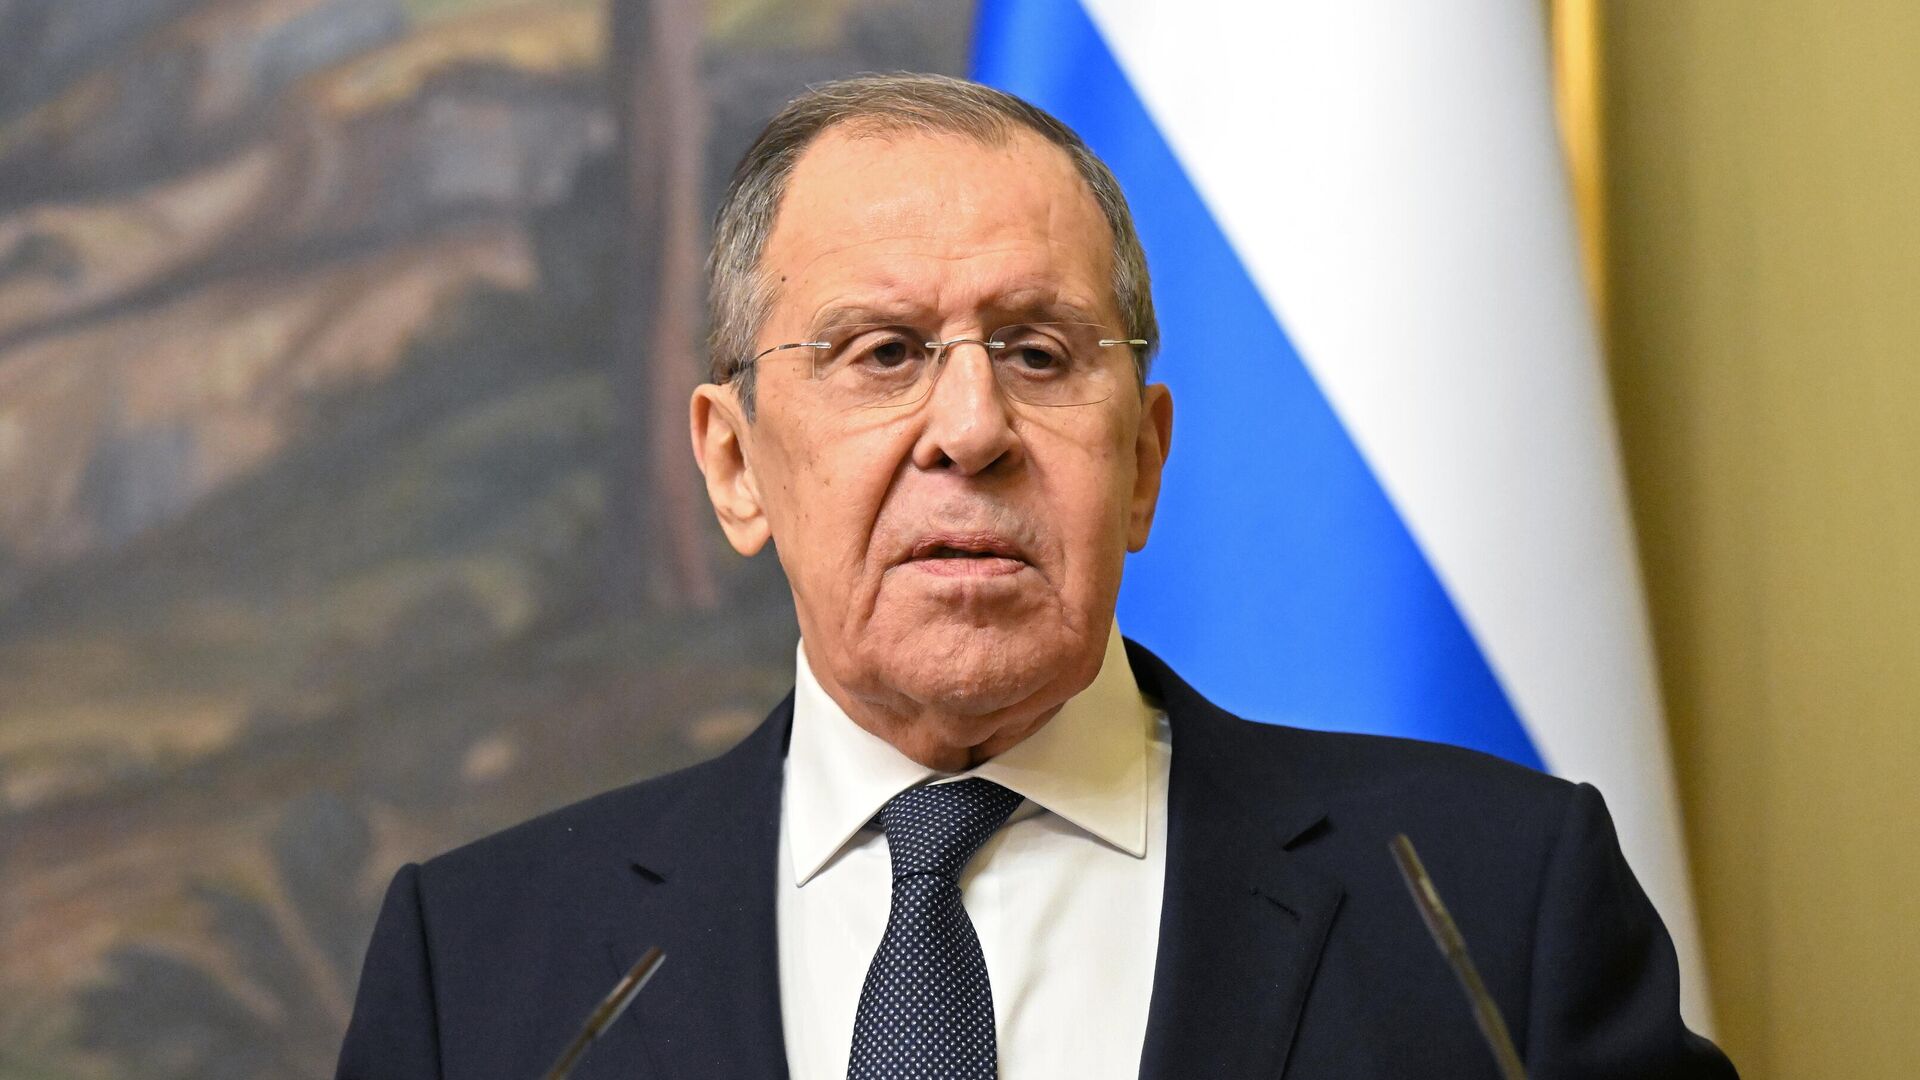 Lavrov: “Qərb Rusiyanın sözdə dekolonizasiyası ilə bağlı fantaziya qurur”